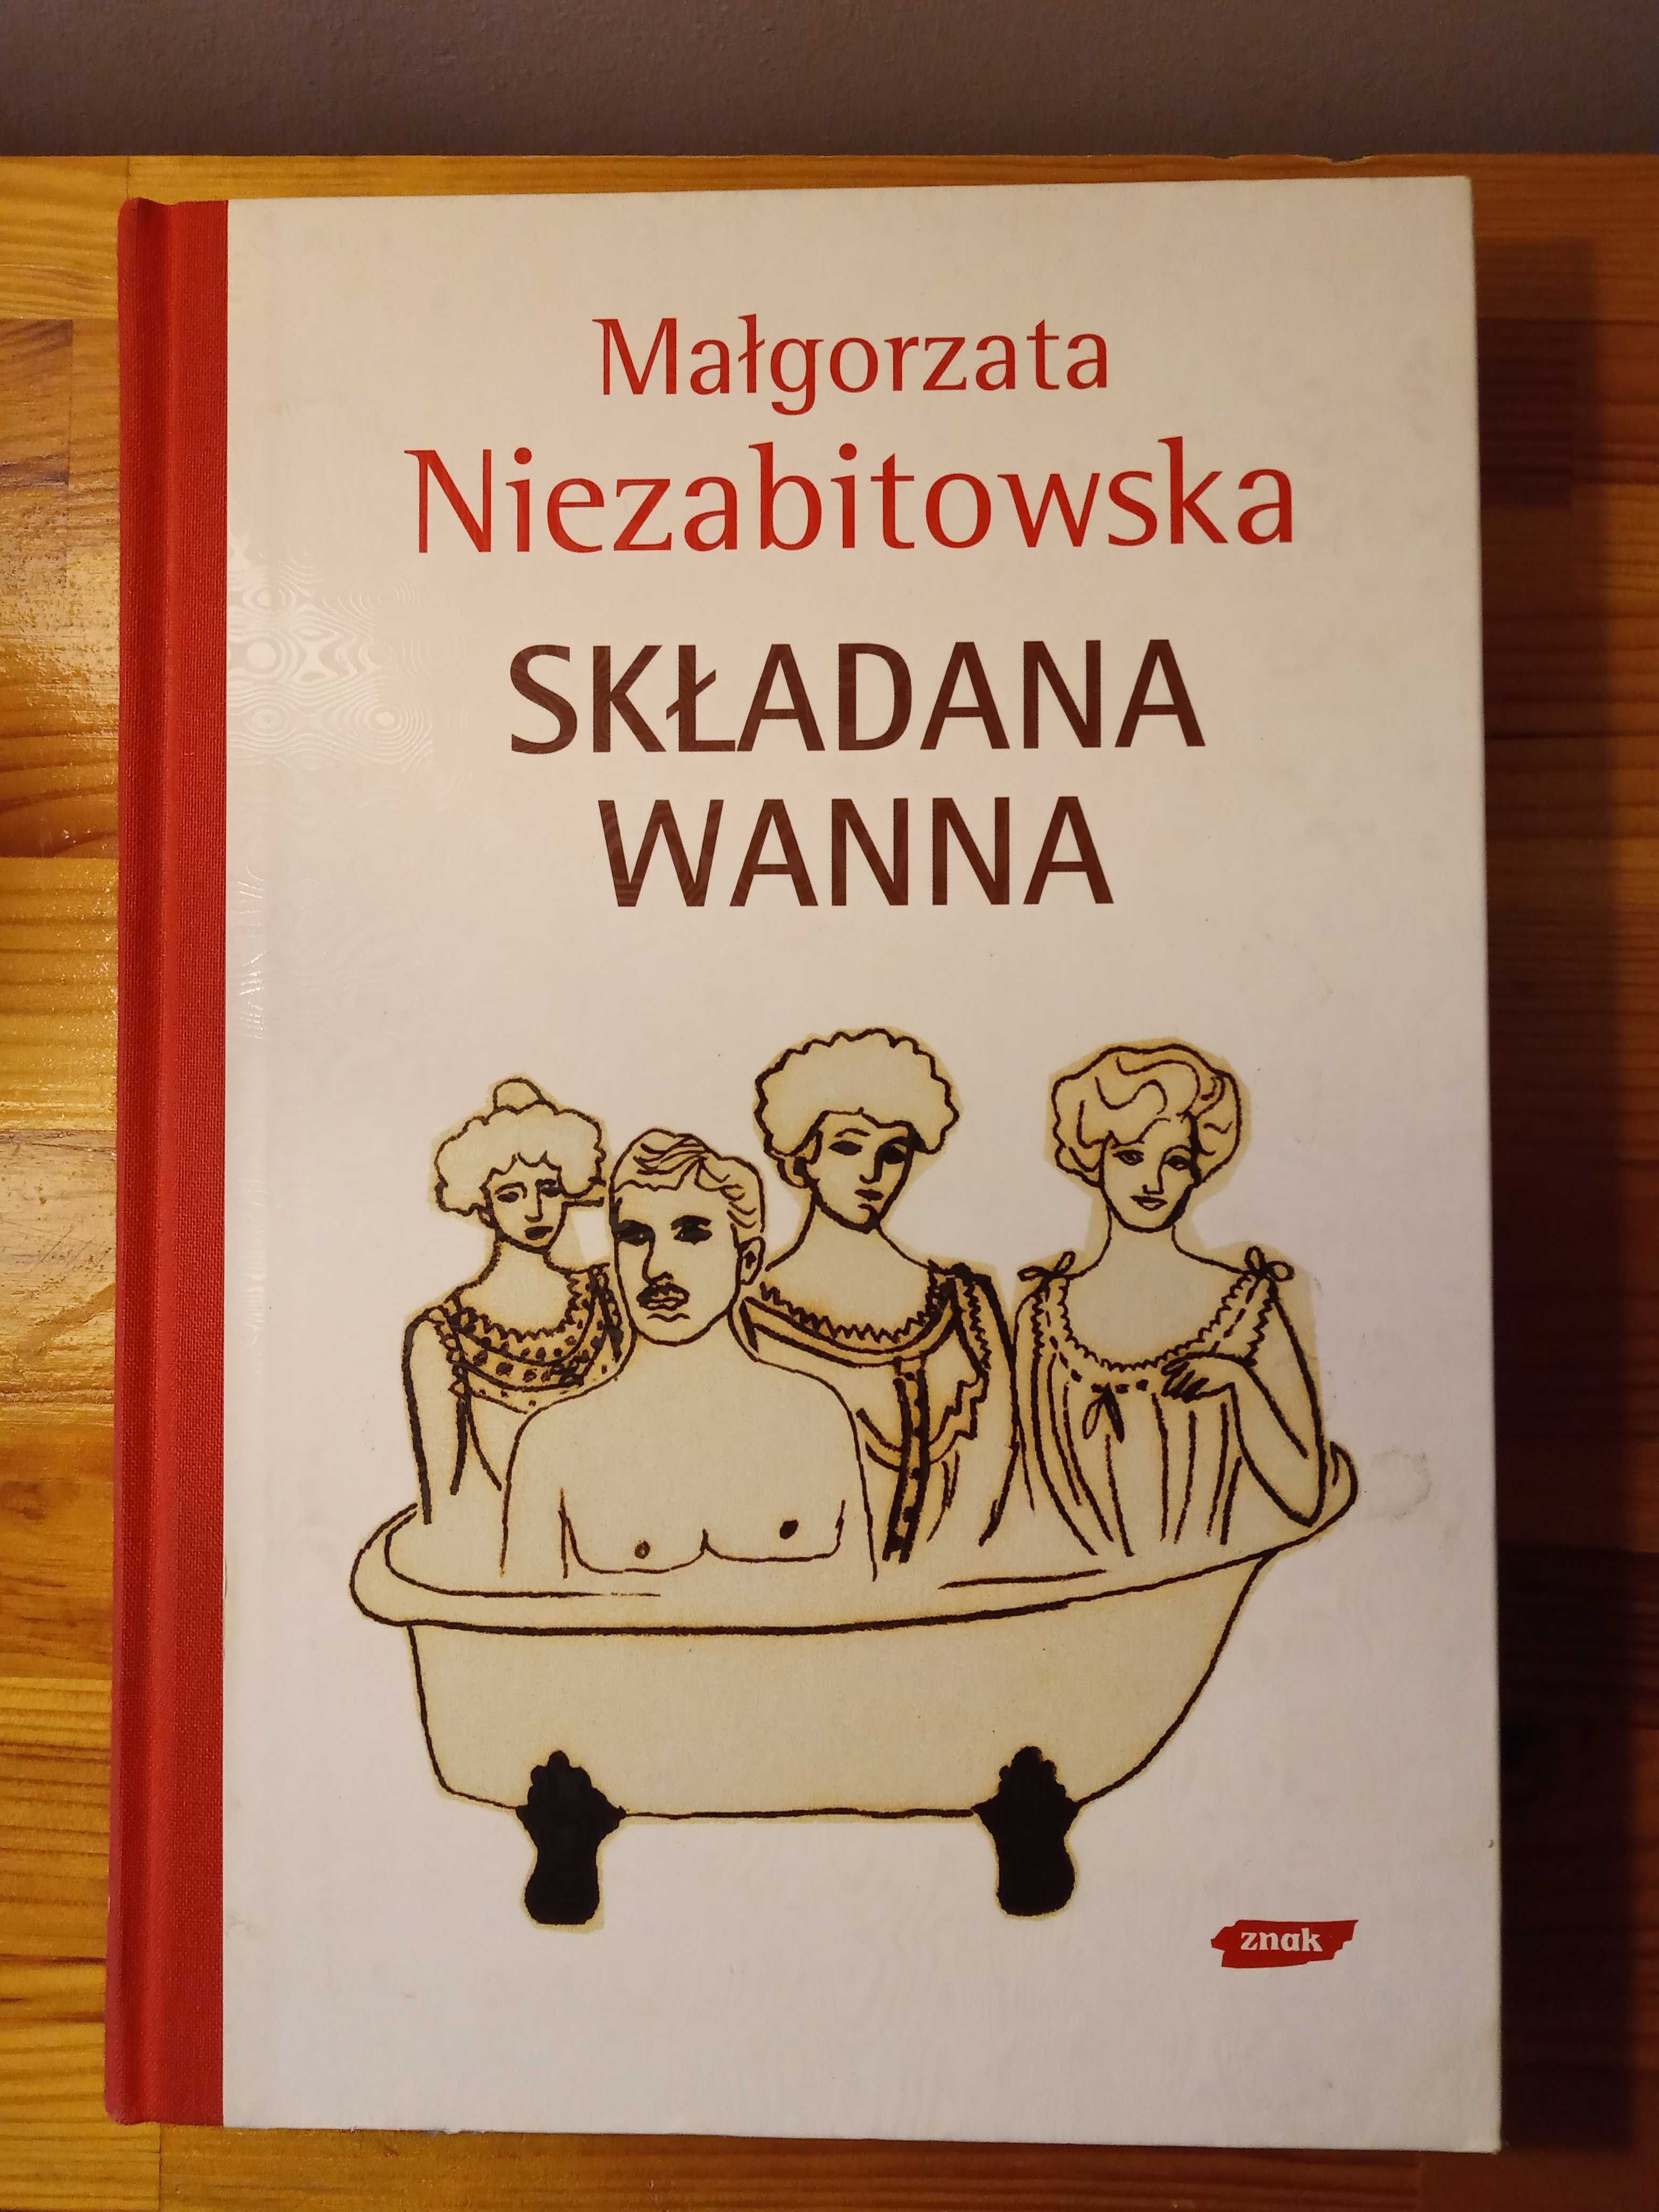 Książka Małgorzata Niezabitowska "Składana wanna"